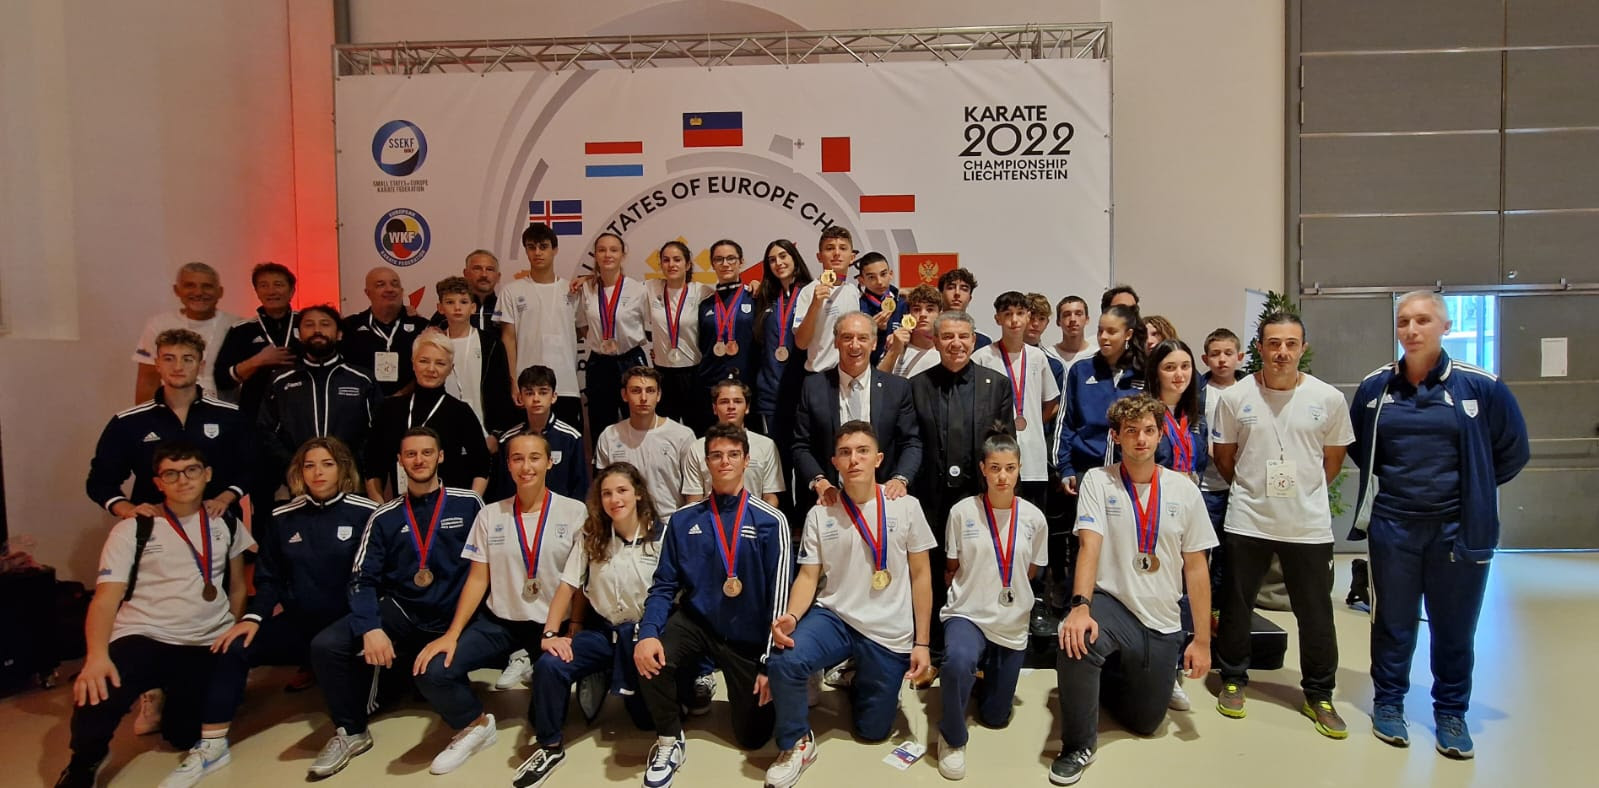 Europei dei Piccoli Stati di karate, San Marino chiude al 4° posto del medagliere